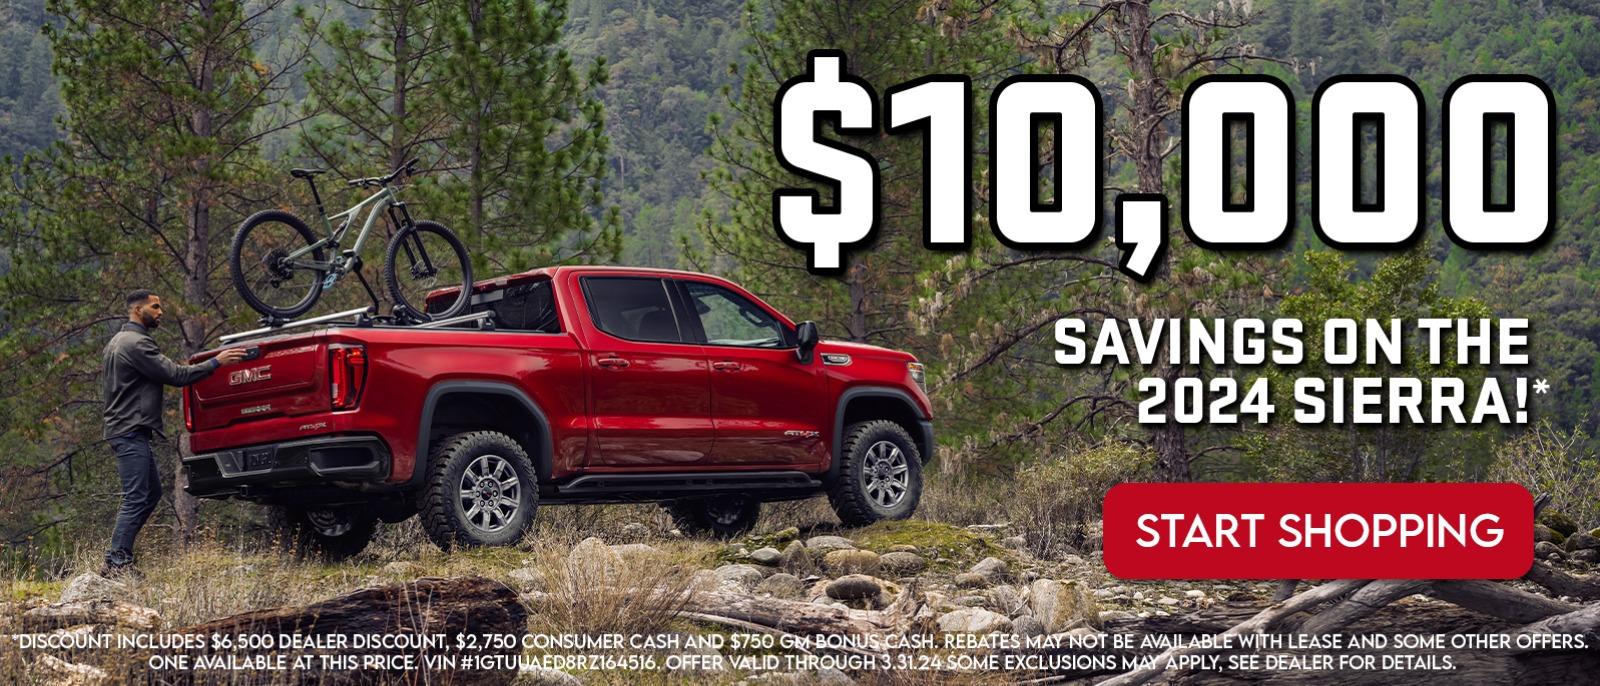 $10,000 
Savings on the  2024 Sierra!*